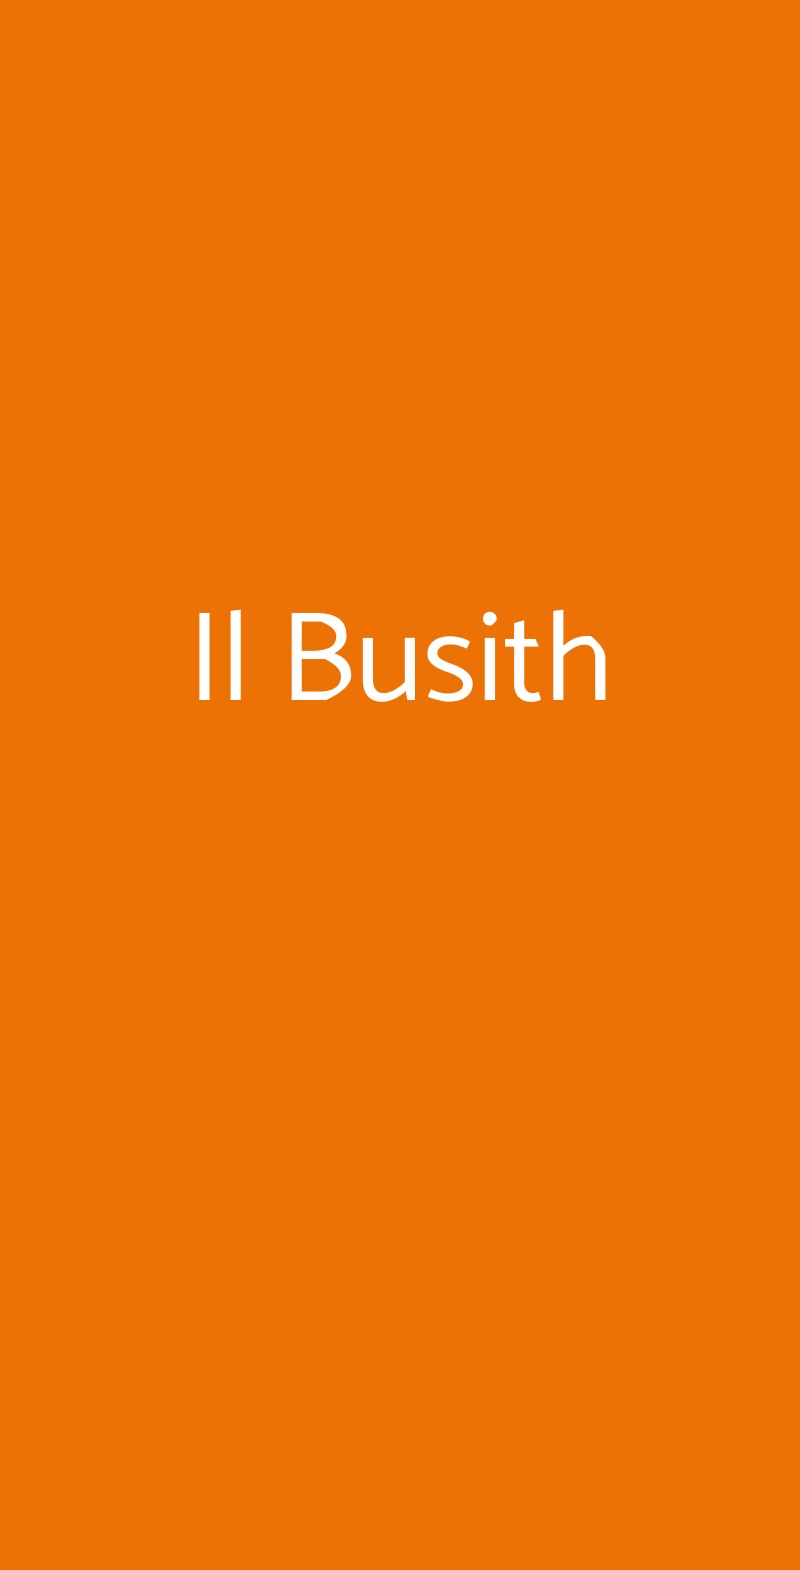 Il Busith Buseto Palizzolo menù 1 pagina